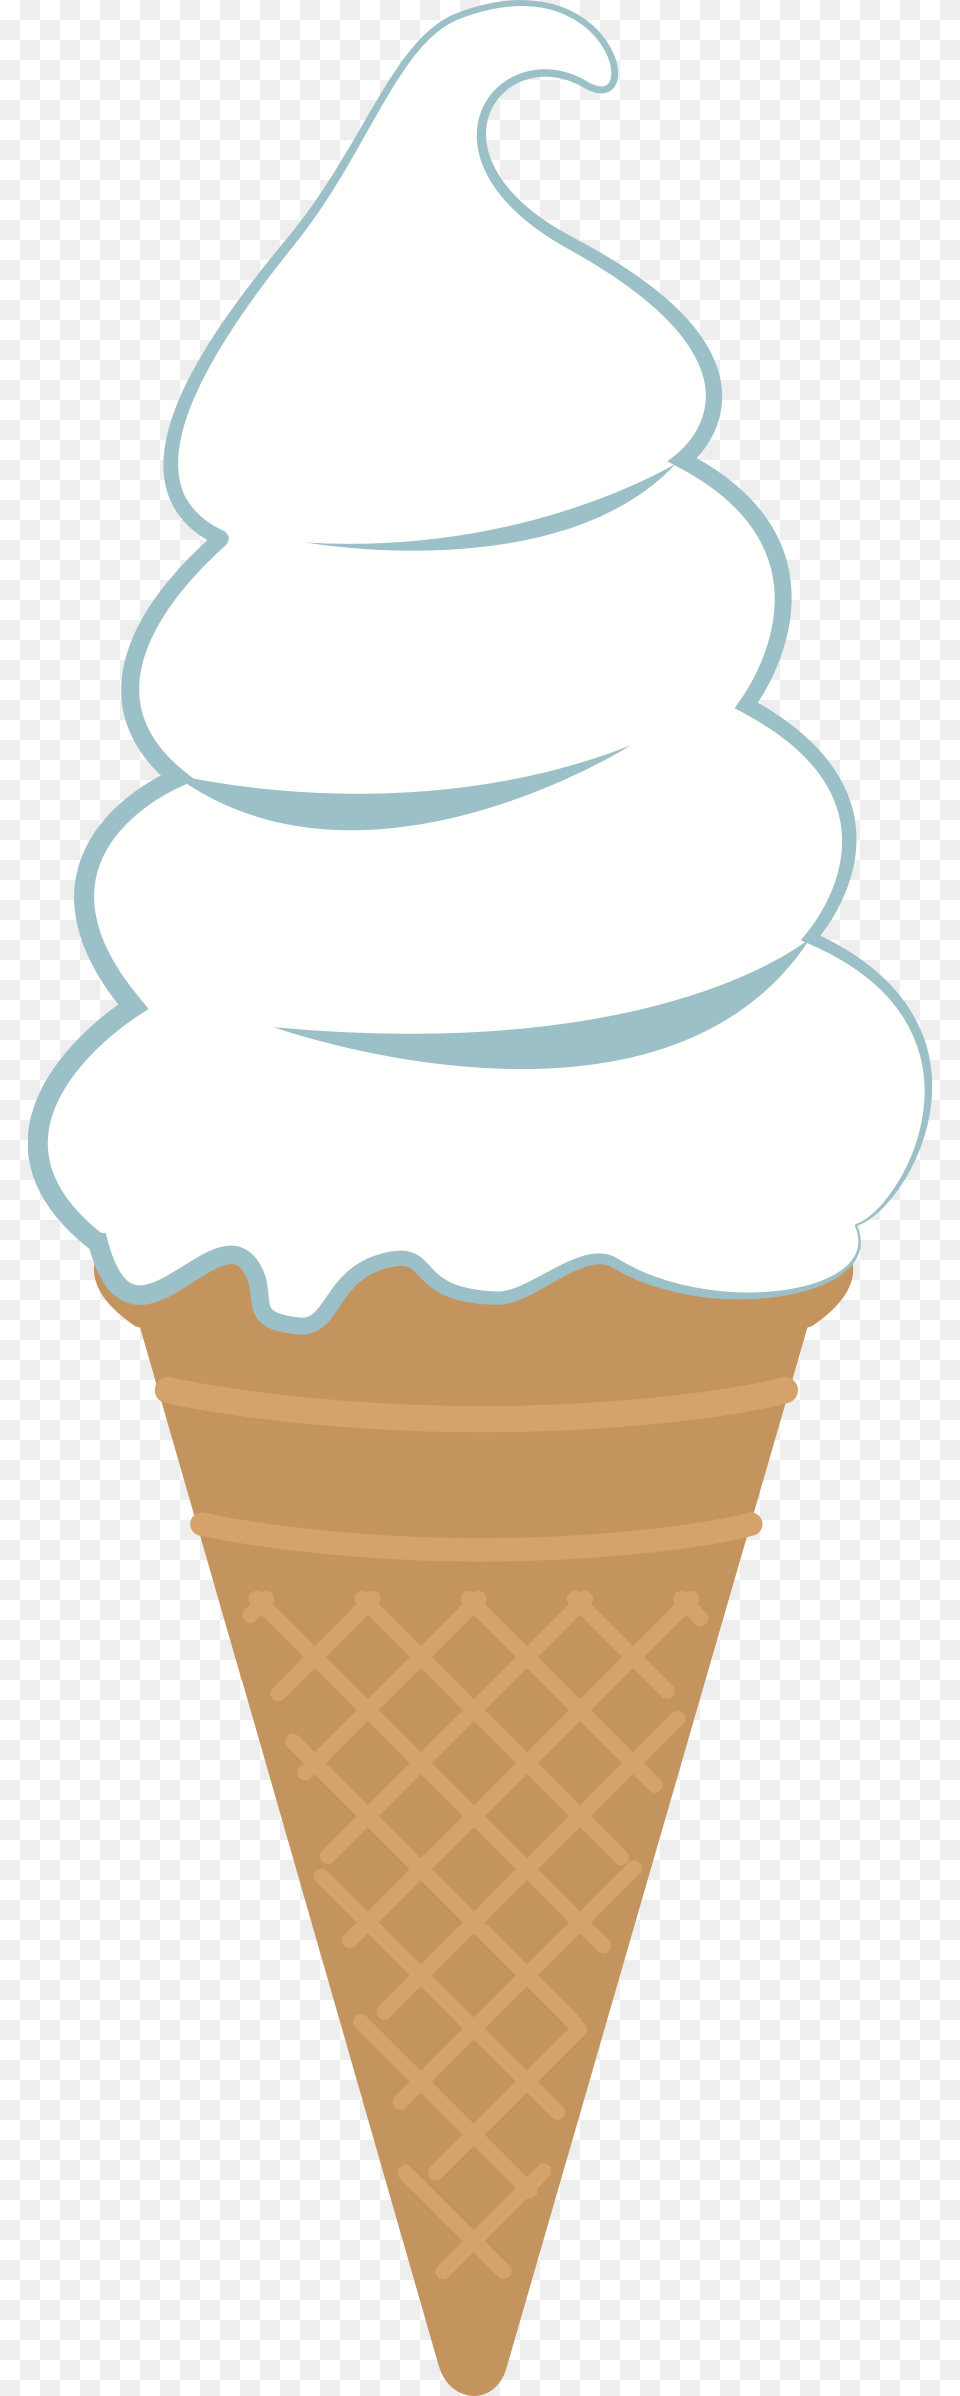 Cone Free Icecream Cone Clipart, Cream, Dessert, Food, Ice Cream Png Image